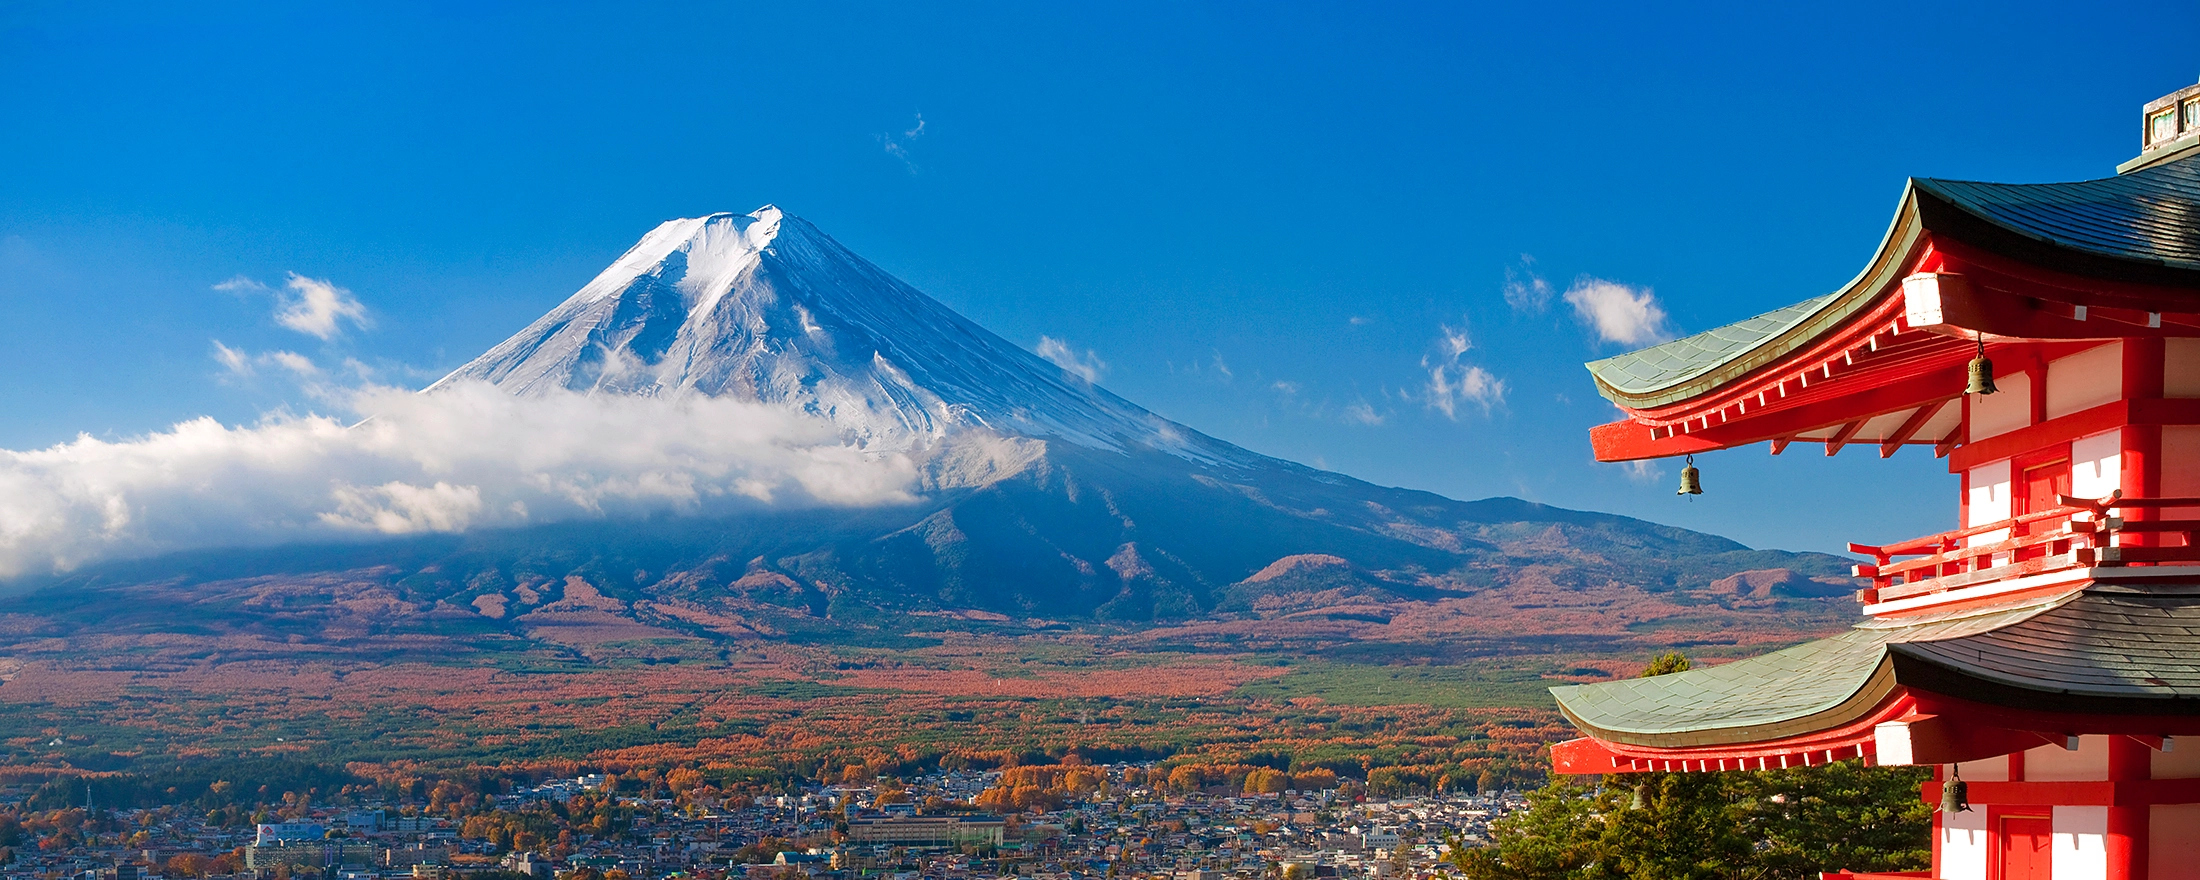 کوه فوجی